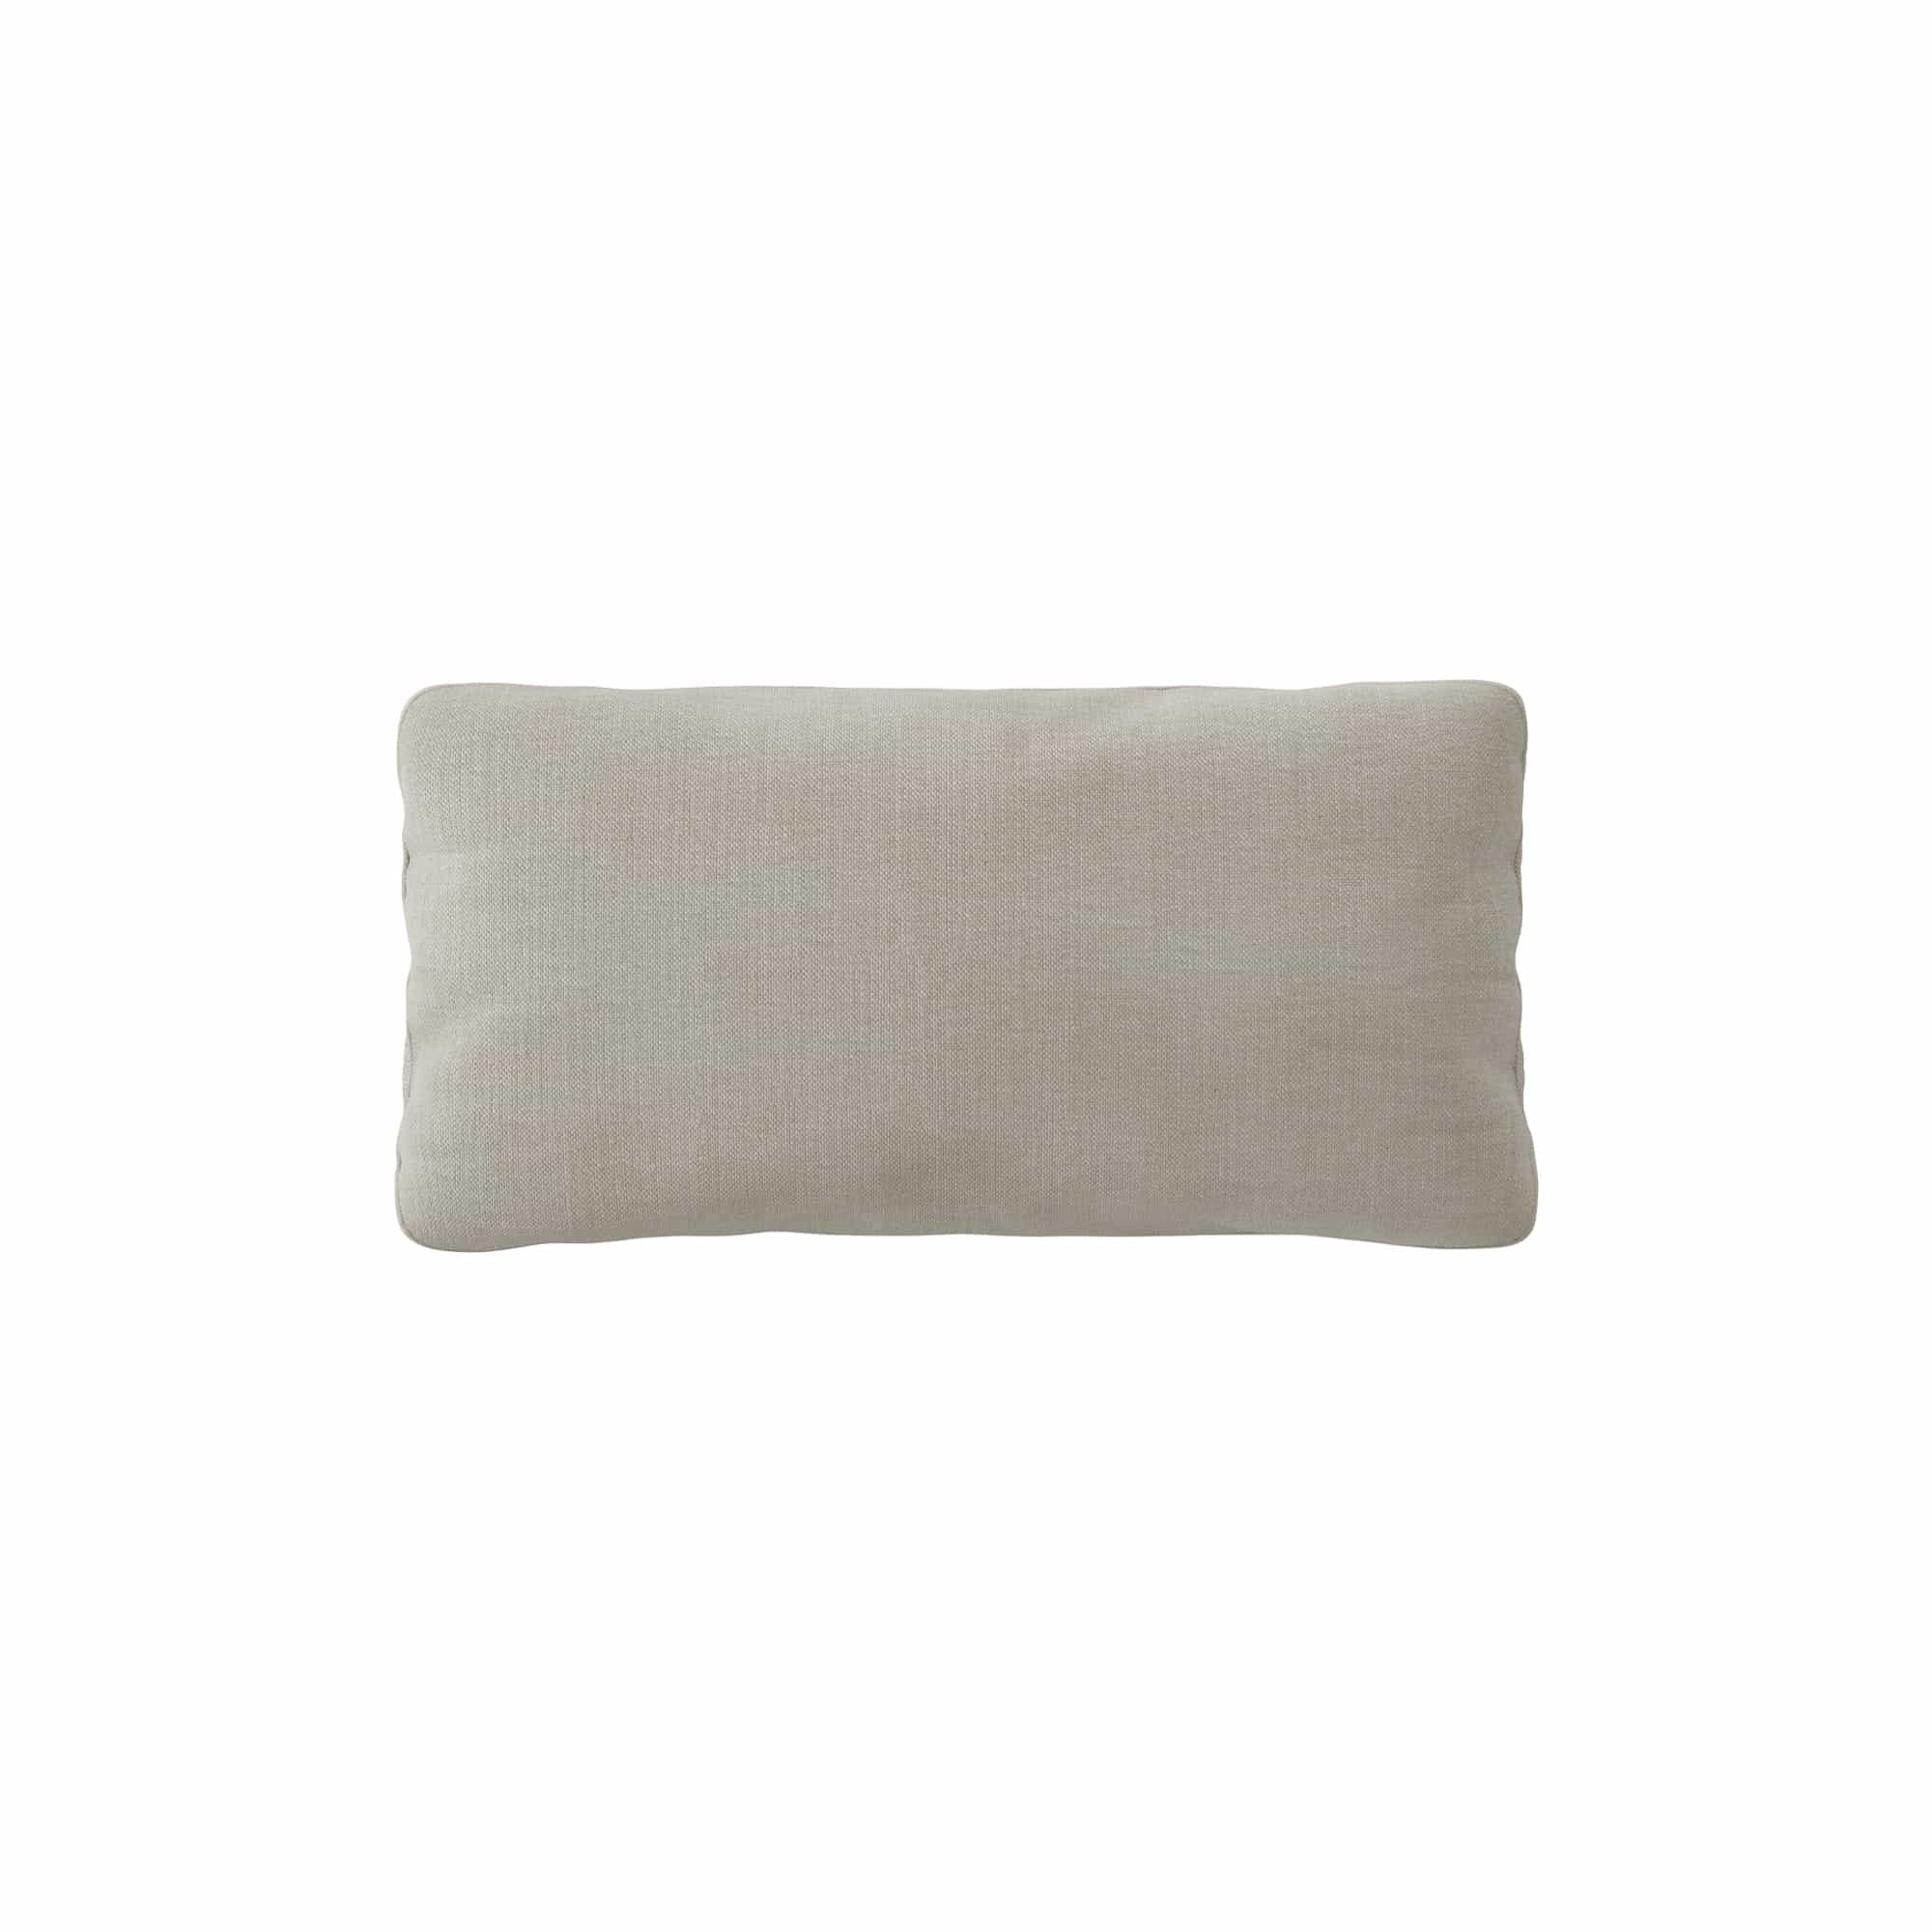 Brick Rectangular Pillow